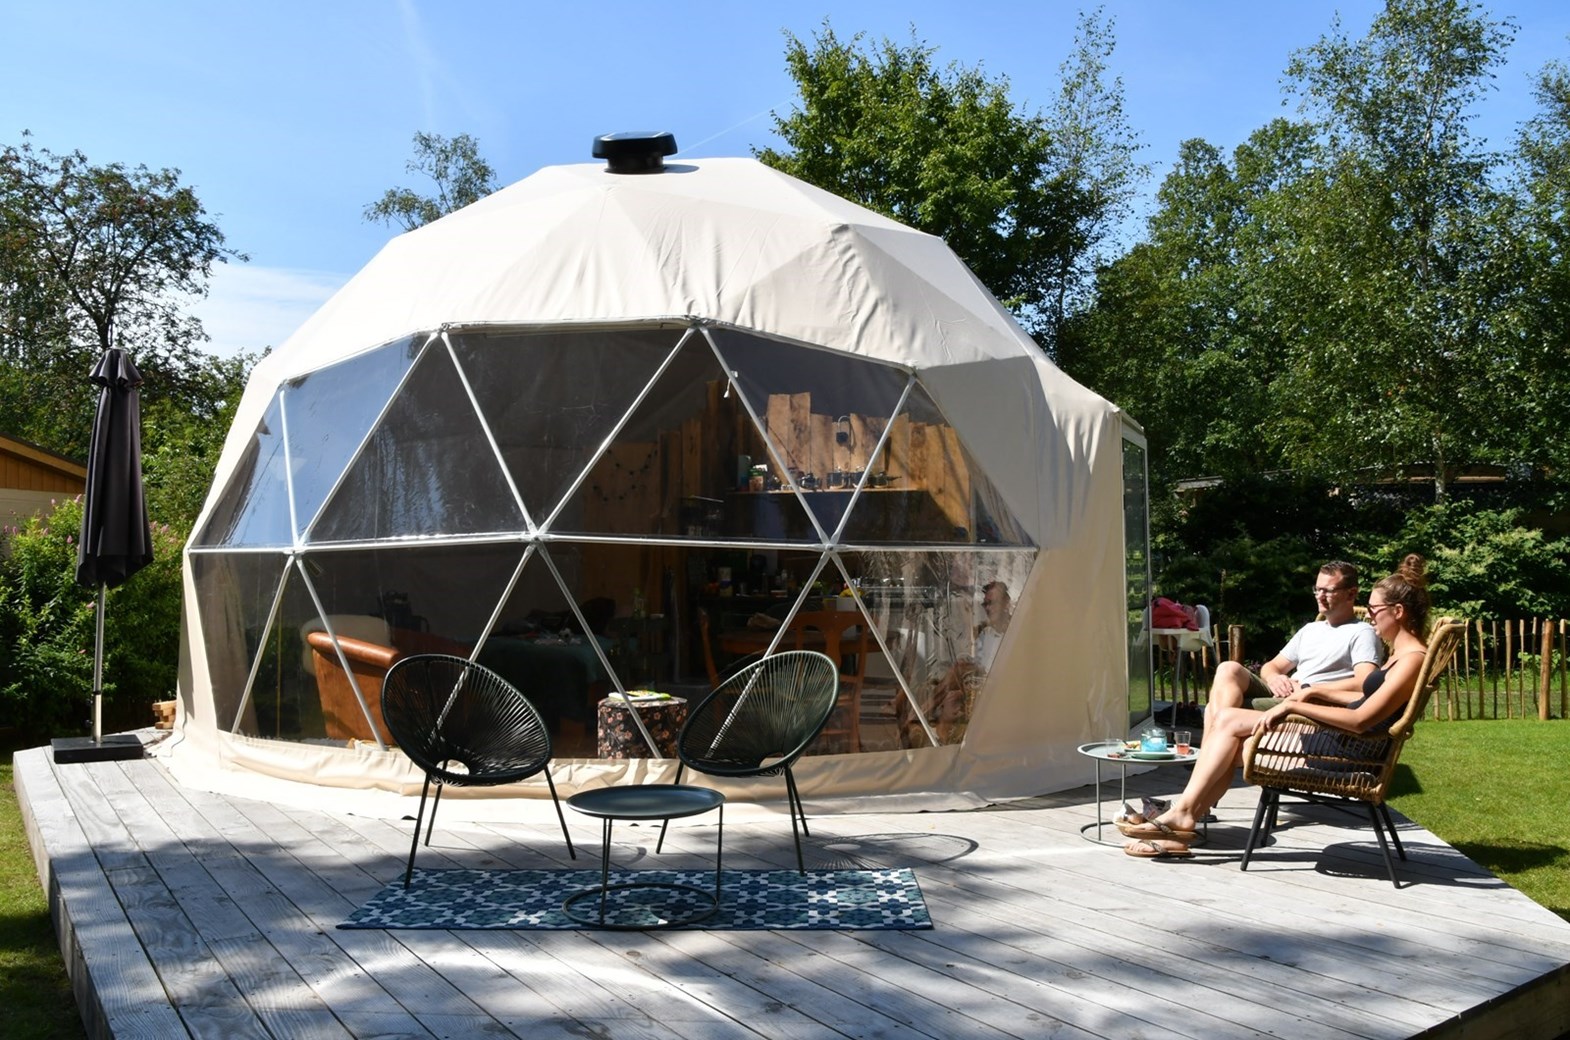 Zuigeling Snoep geboren Glamping Dome tent - OrigineelOvernachten